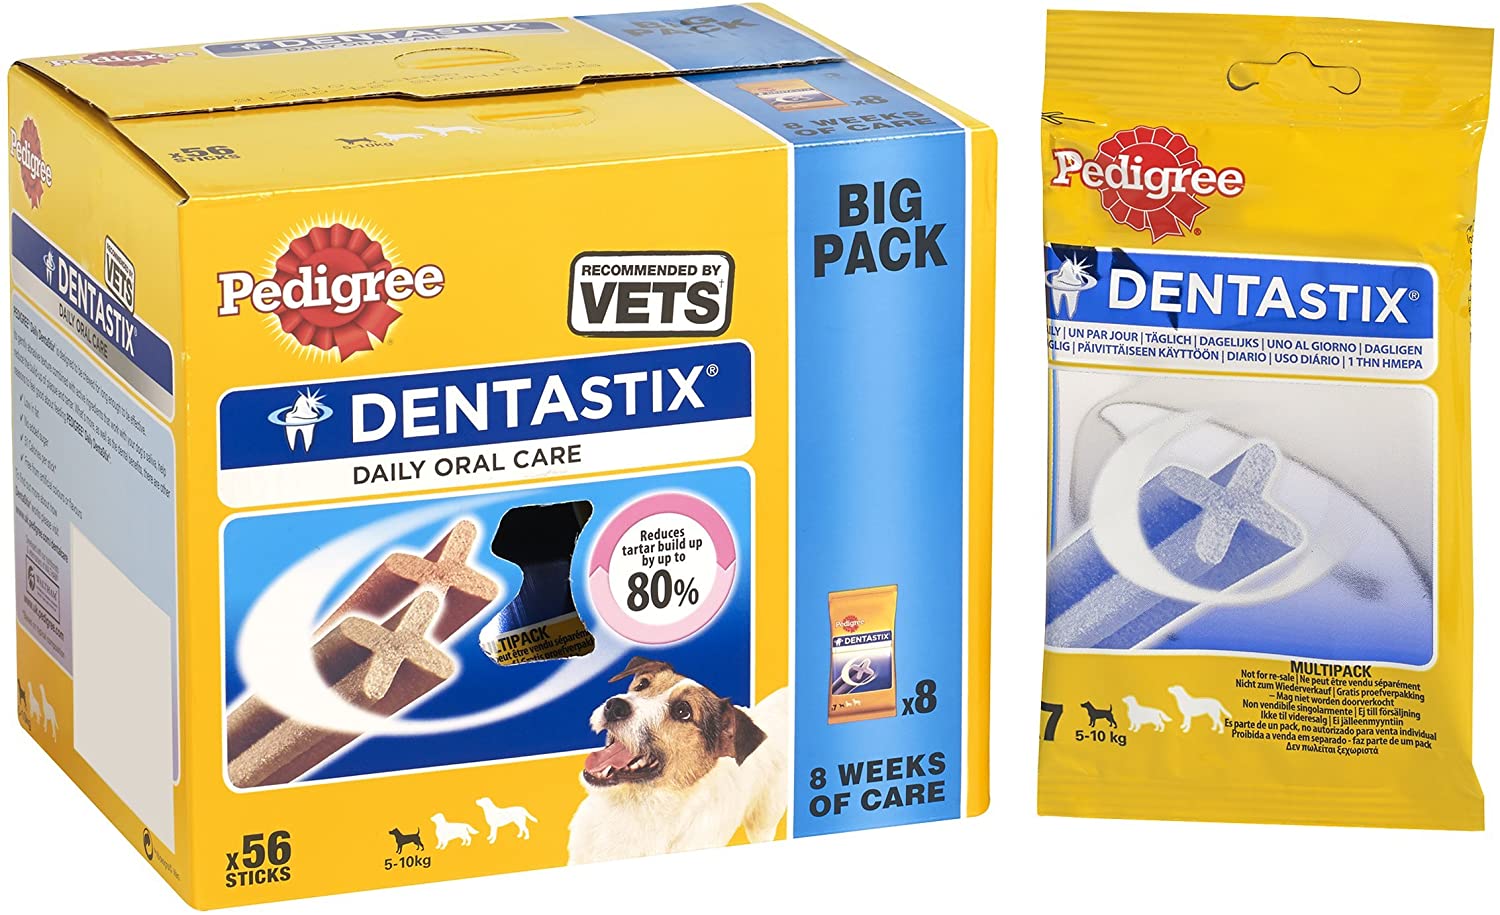  Pedigree Dentastix Diario Oral Cuidado Perro Pequeño 5-10 K G, 56 palitos, pack de 1 